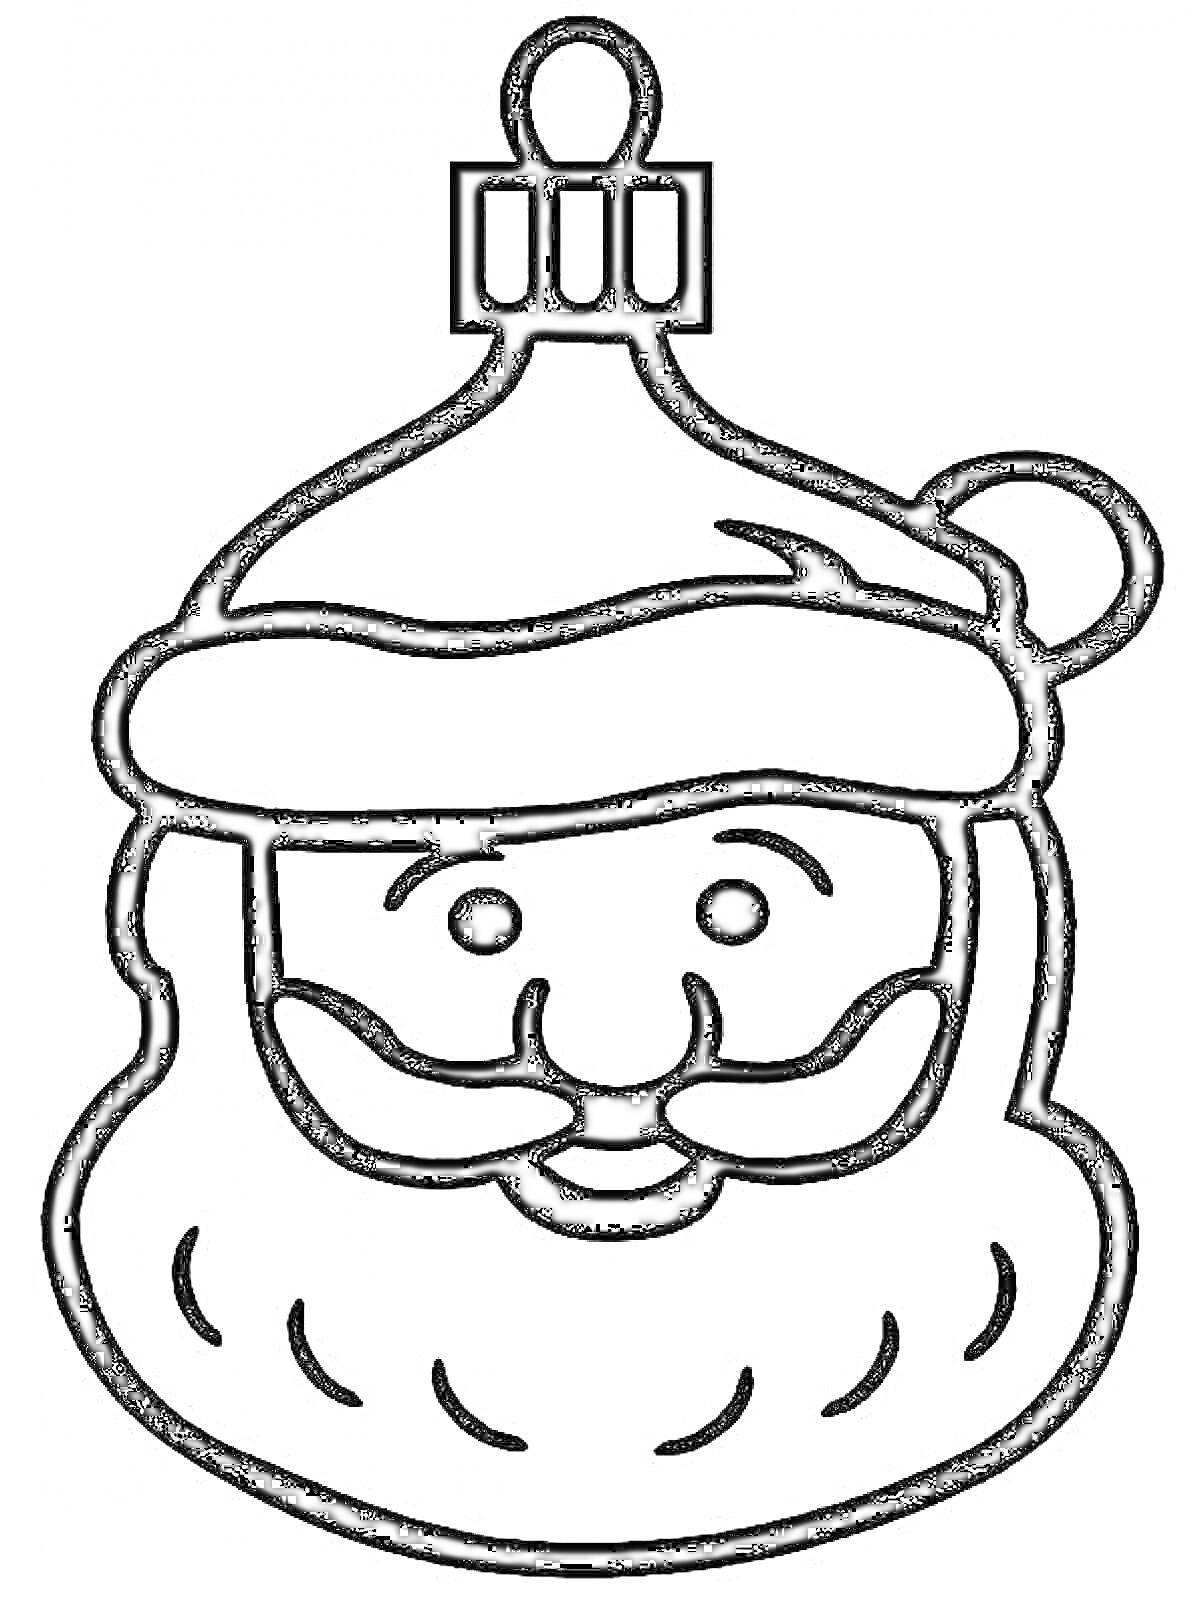 Елочная игрушка в виде лица Деда Мороза с шапкой и бородой